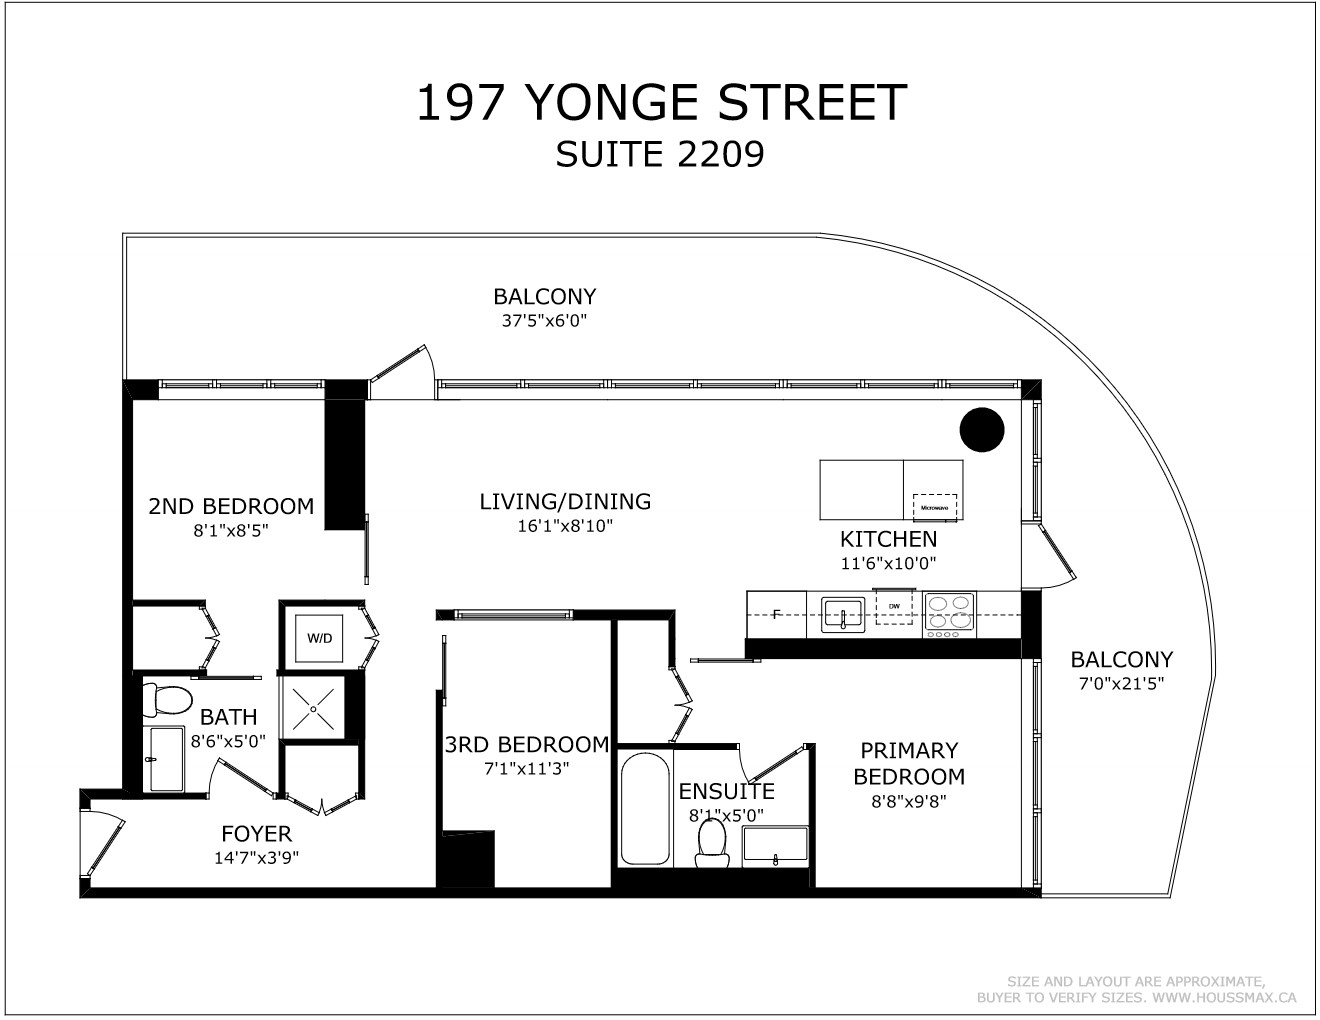 Floor plans for 197 Yonge St Unit 2209.